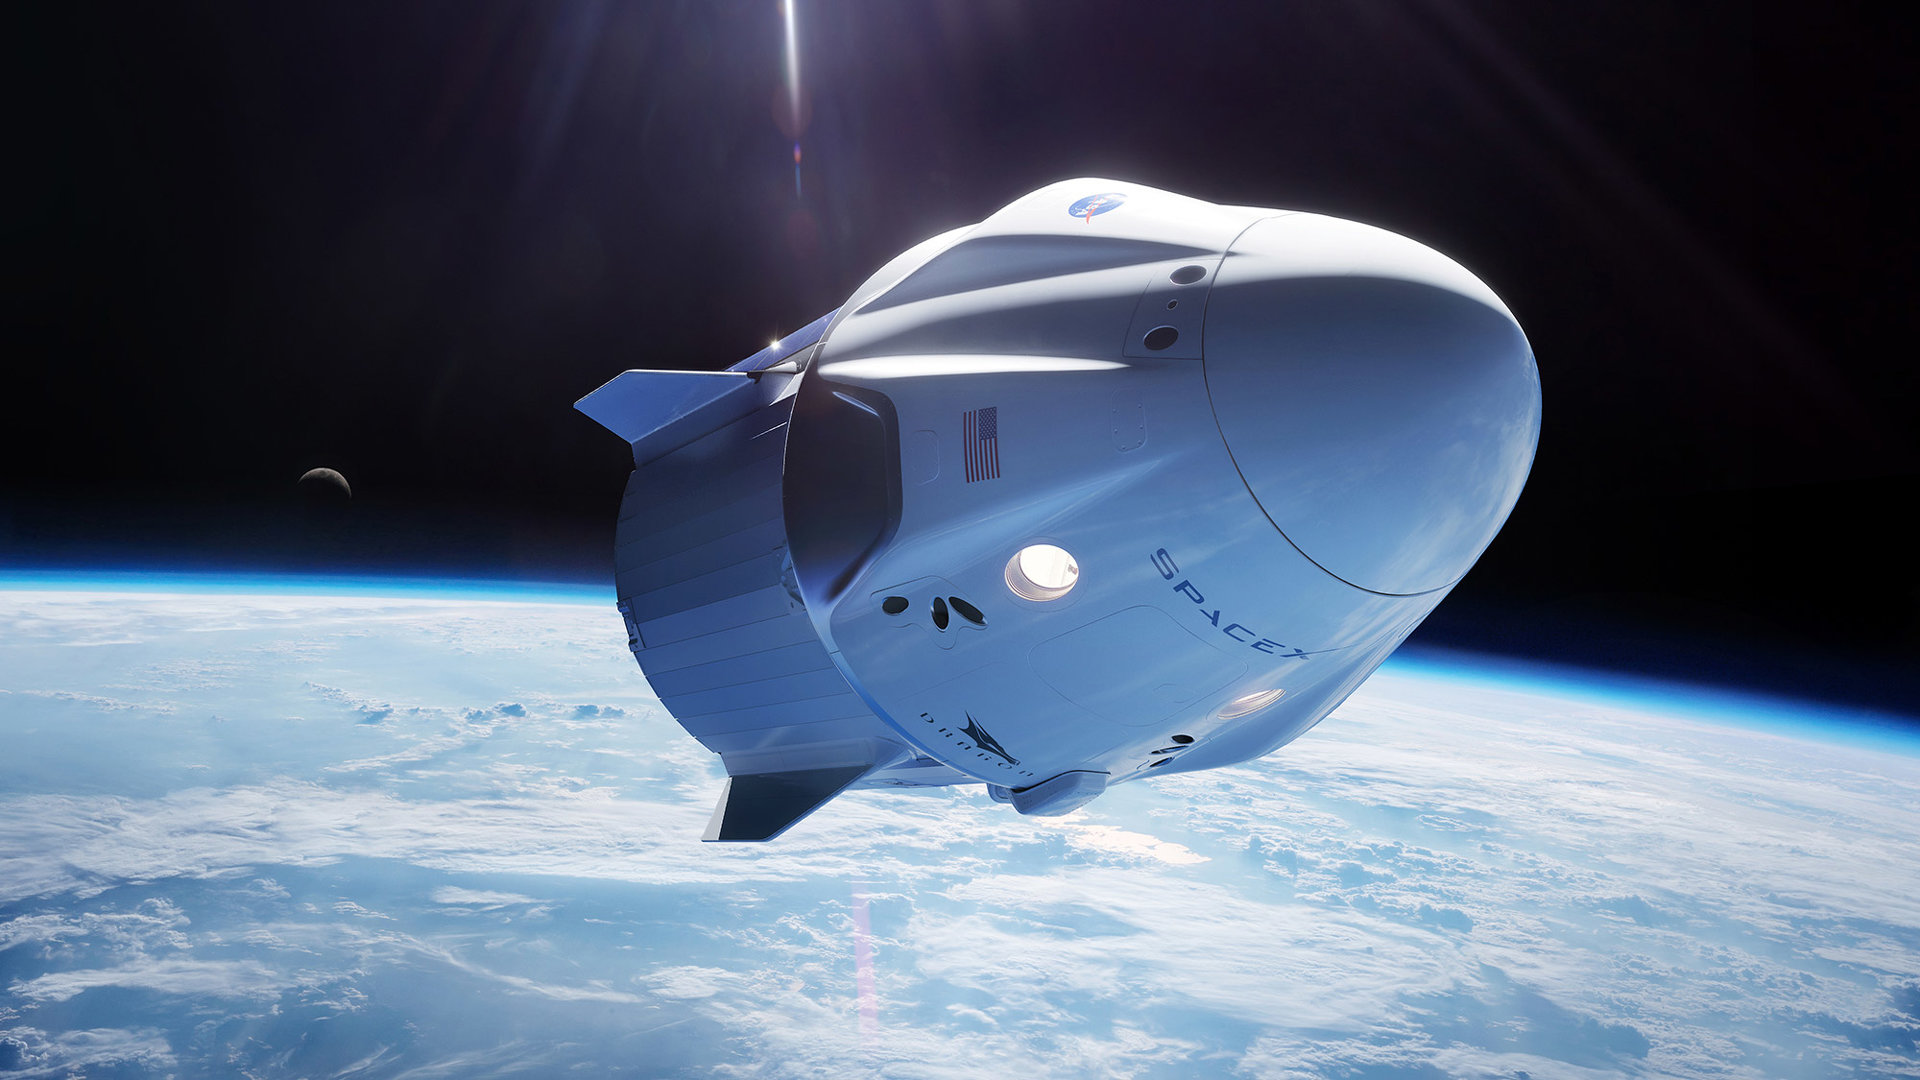 SpaceXの「Crew Dragon」での民間人宇宙旅行、早ければ2021年にも実現